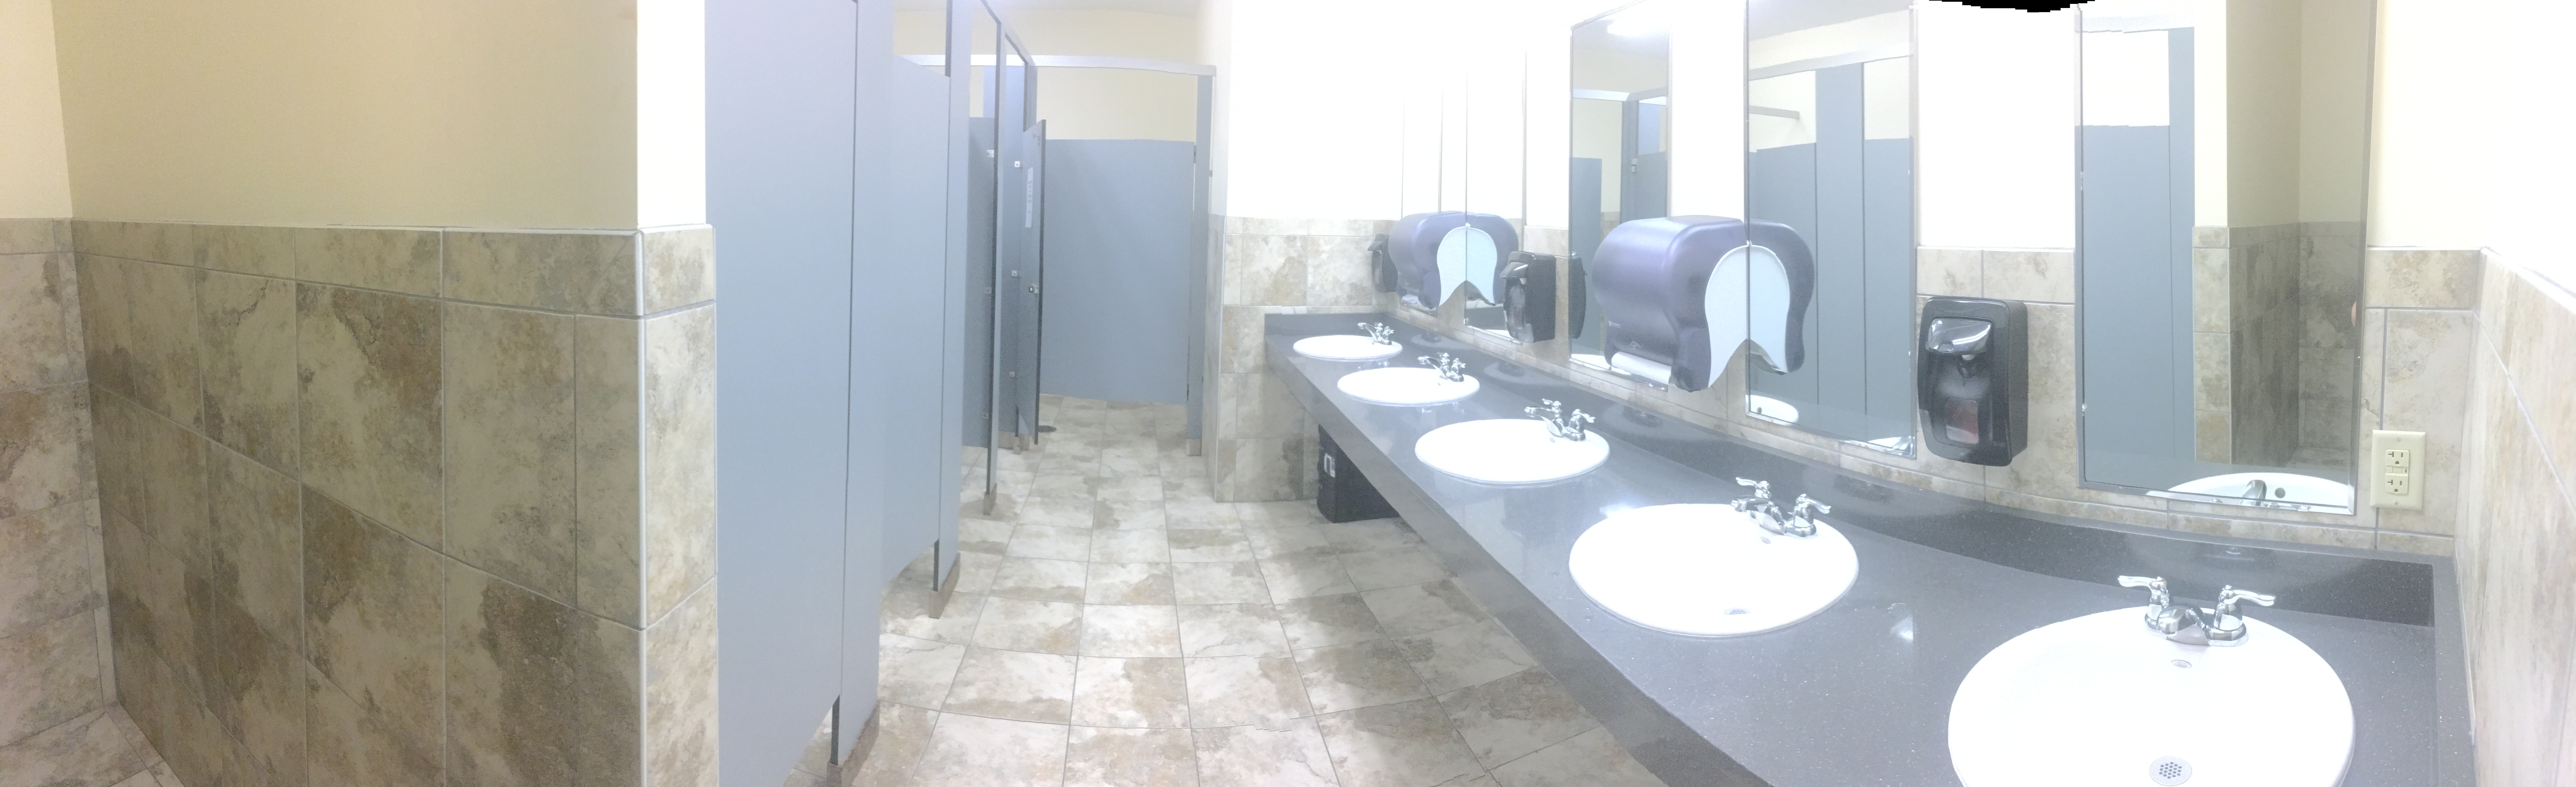 galleria-restrooms